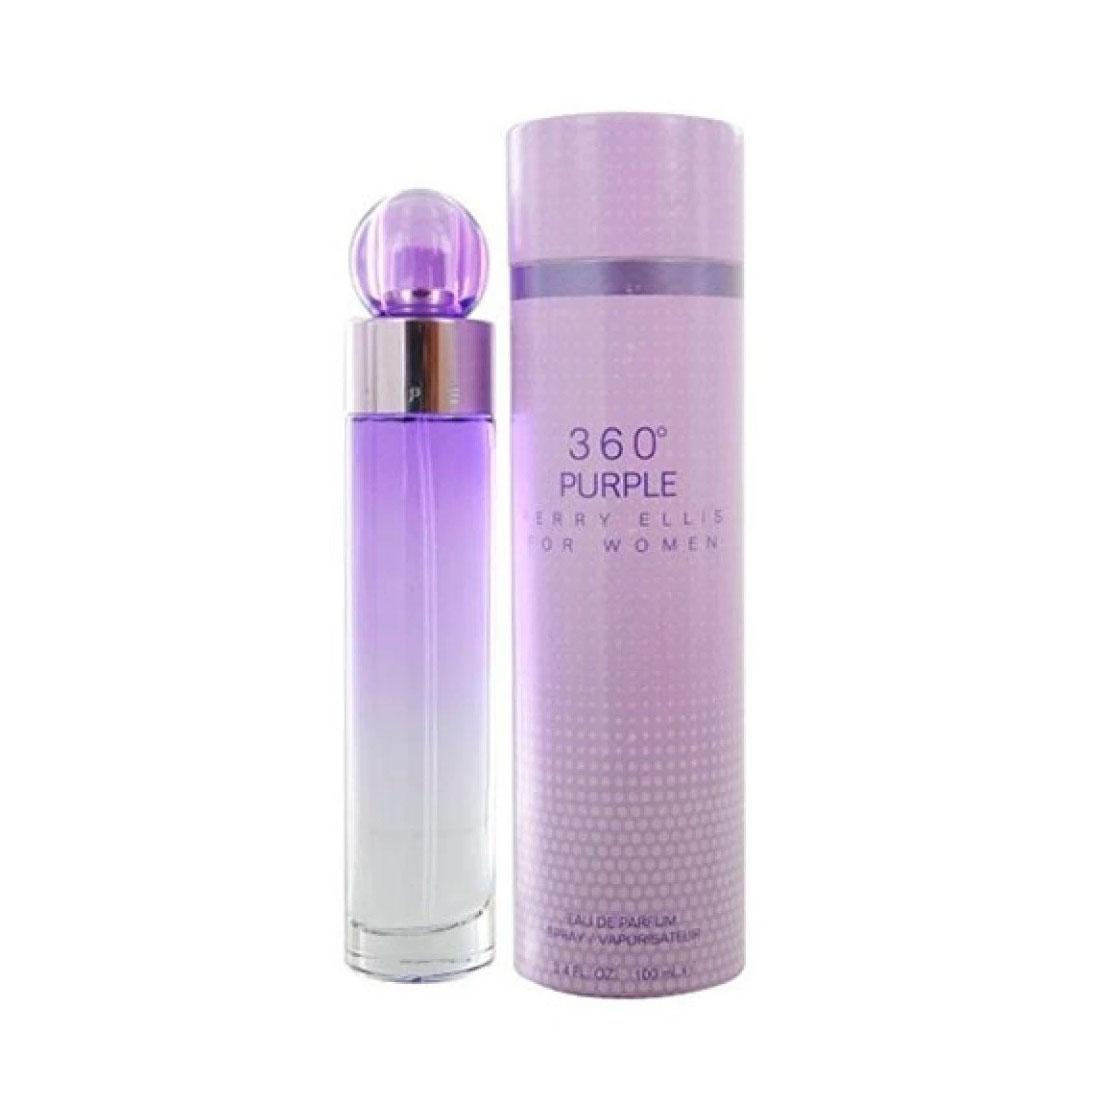 Perfume Mujer 360 Purple Eau de Parfum 100ml Perry Ellis